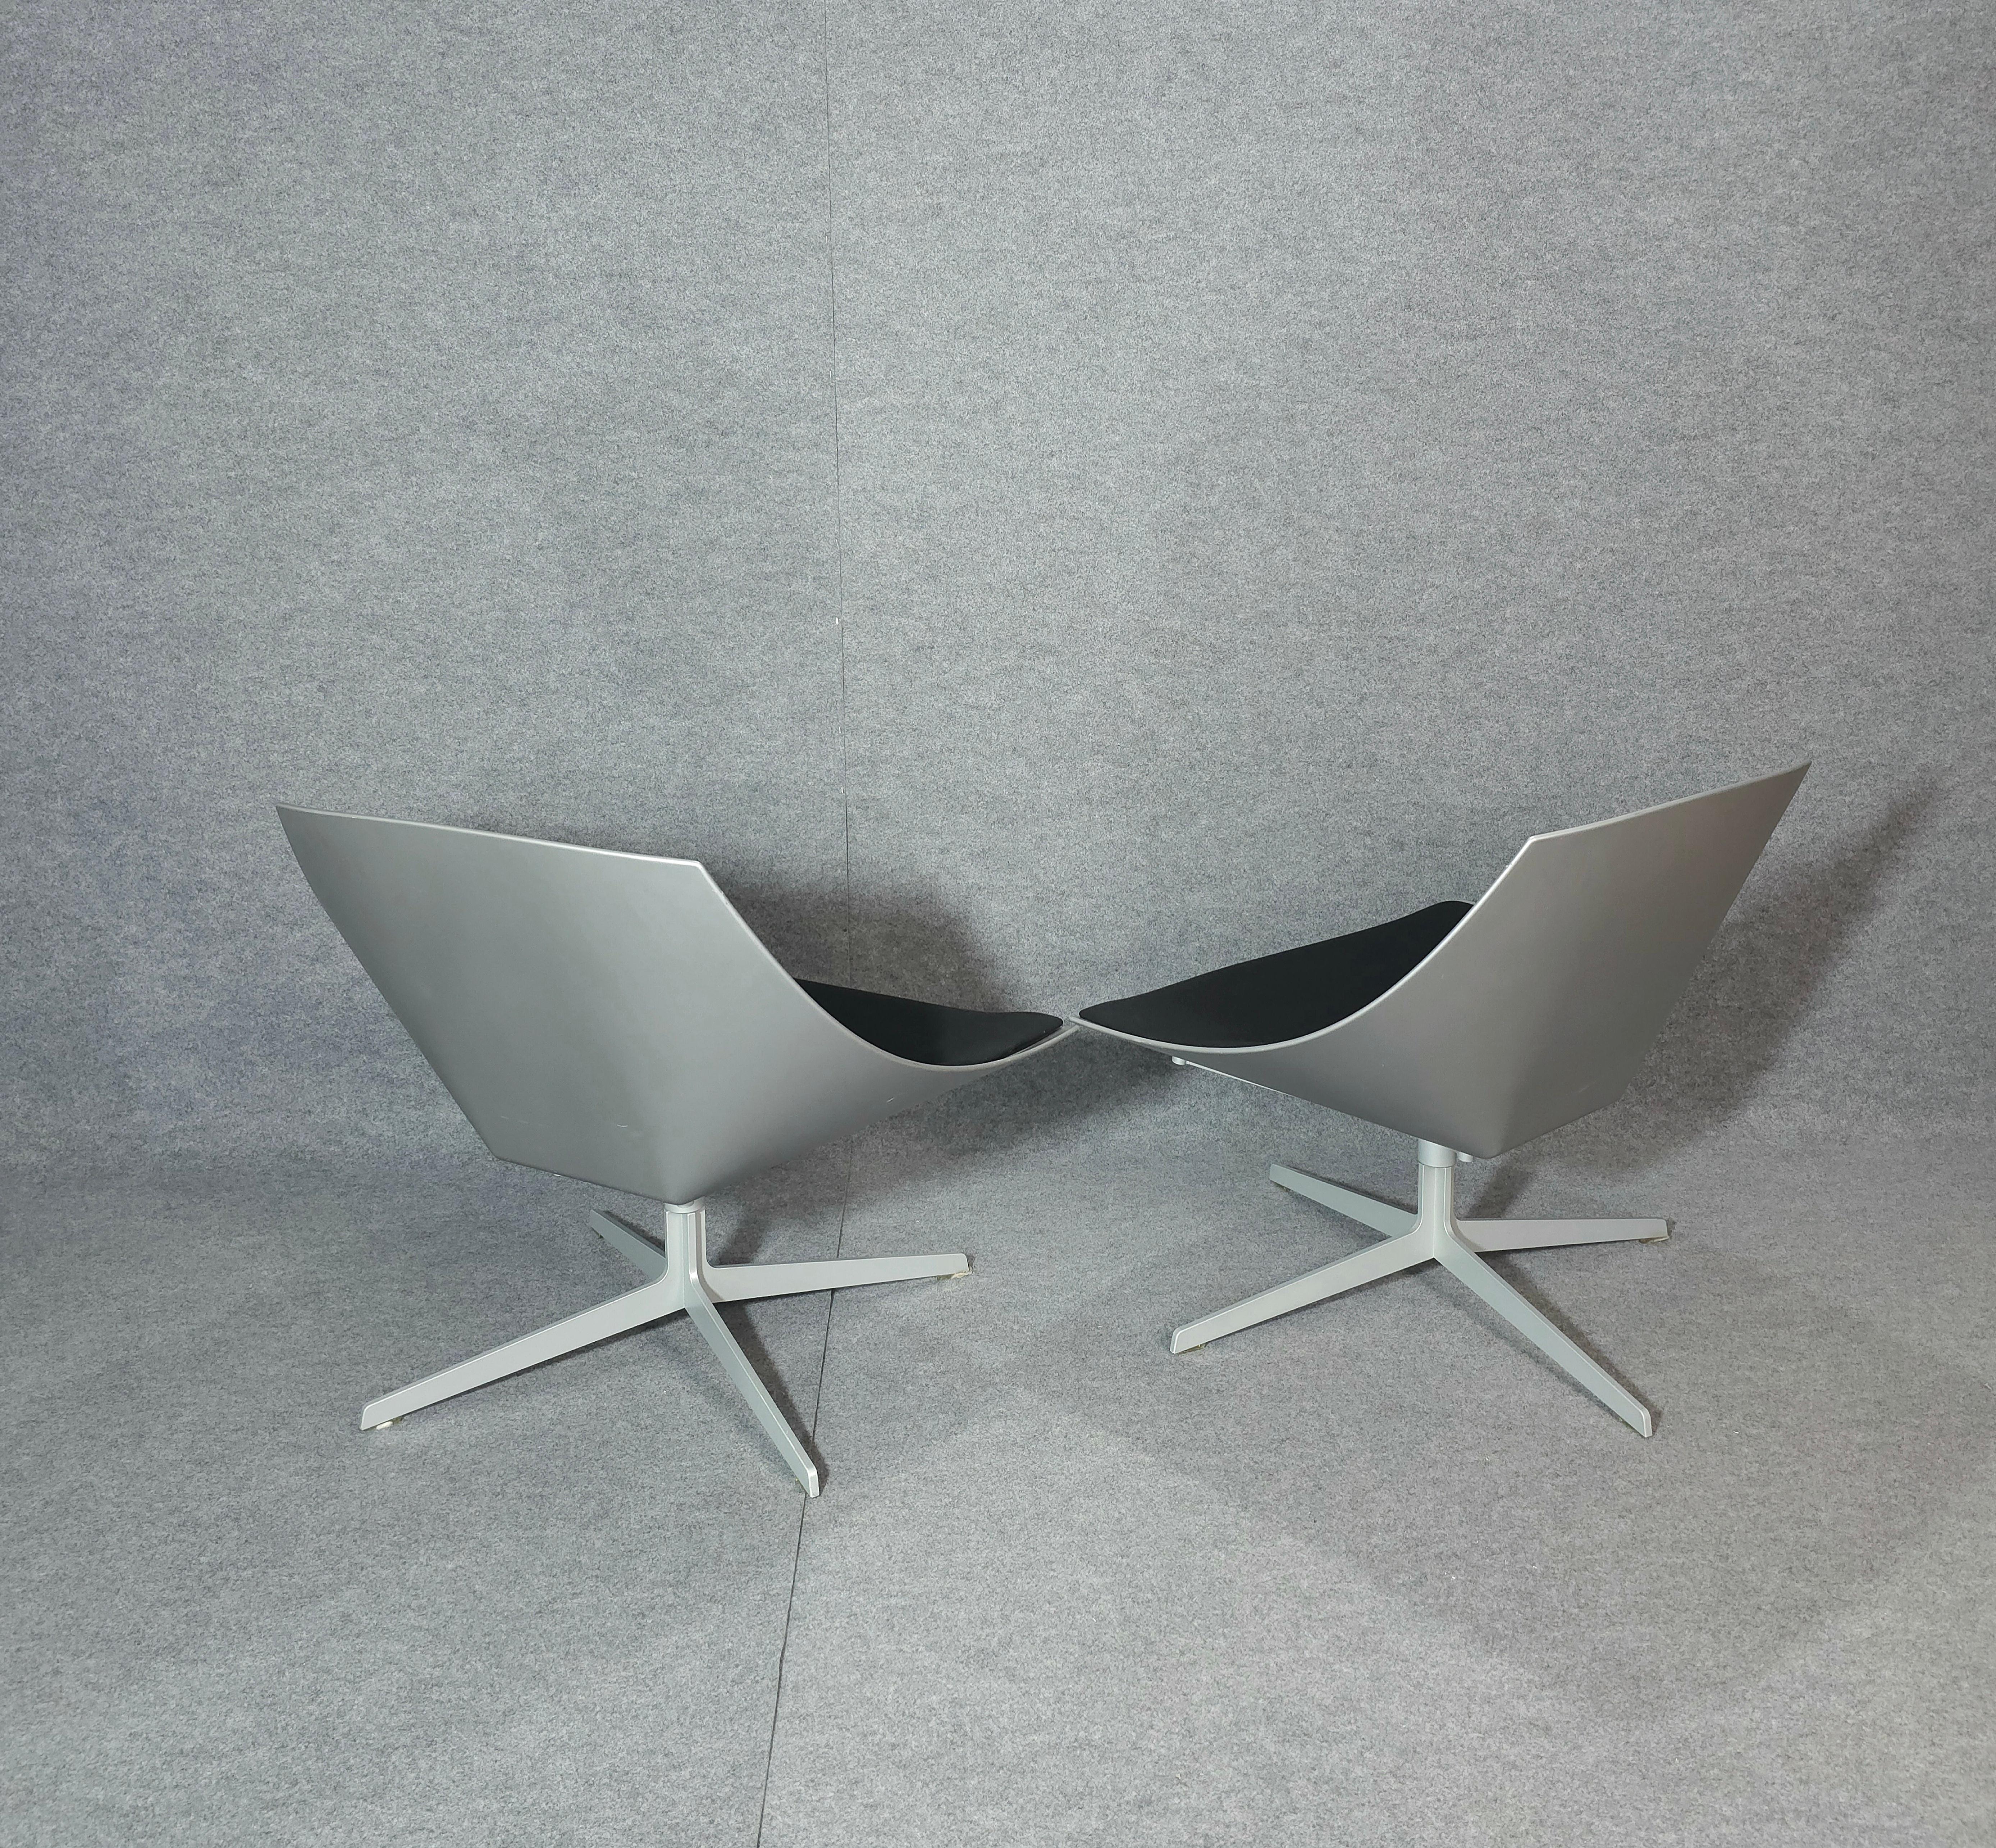 Steel Jehs & Laub for Fritz Hansen Swivel Chair Modern Pair Denmark Design 2007 For Sale